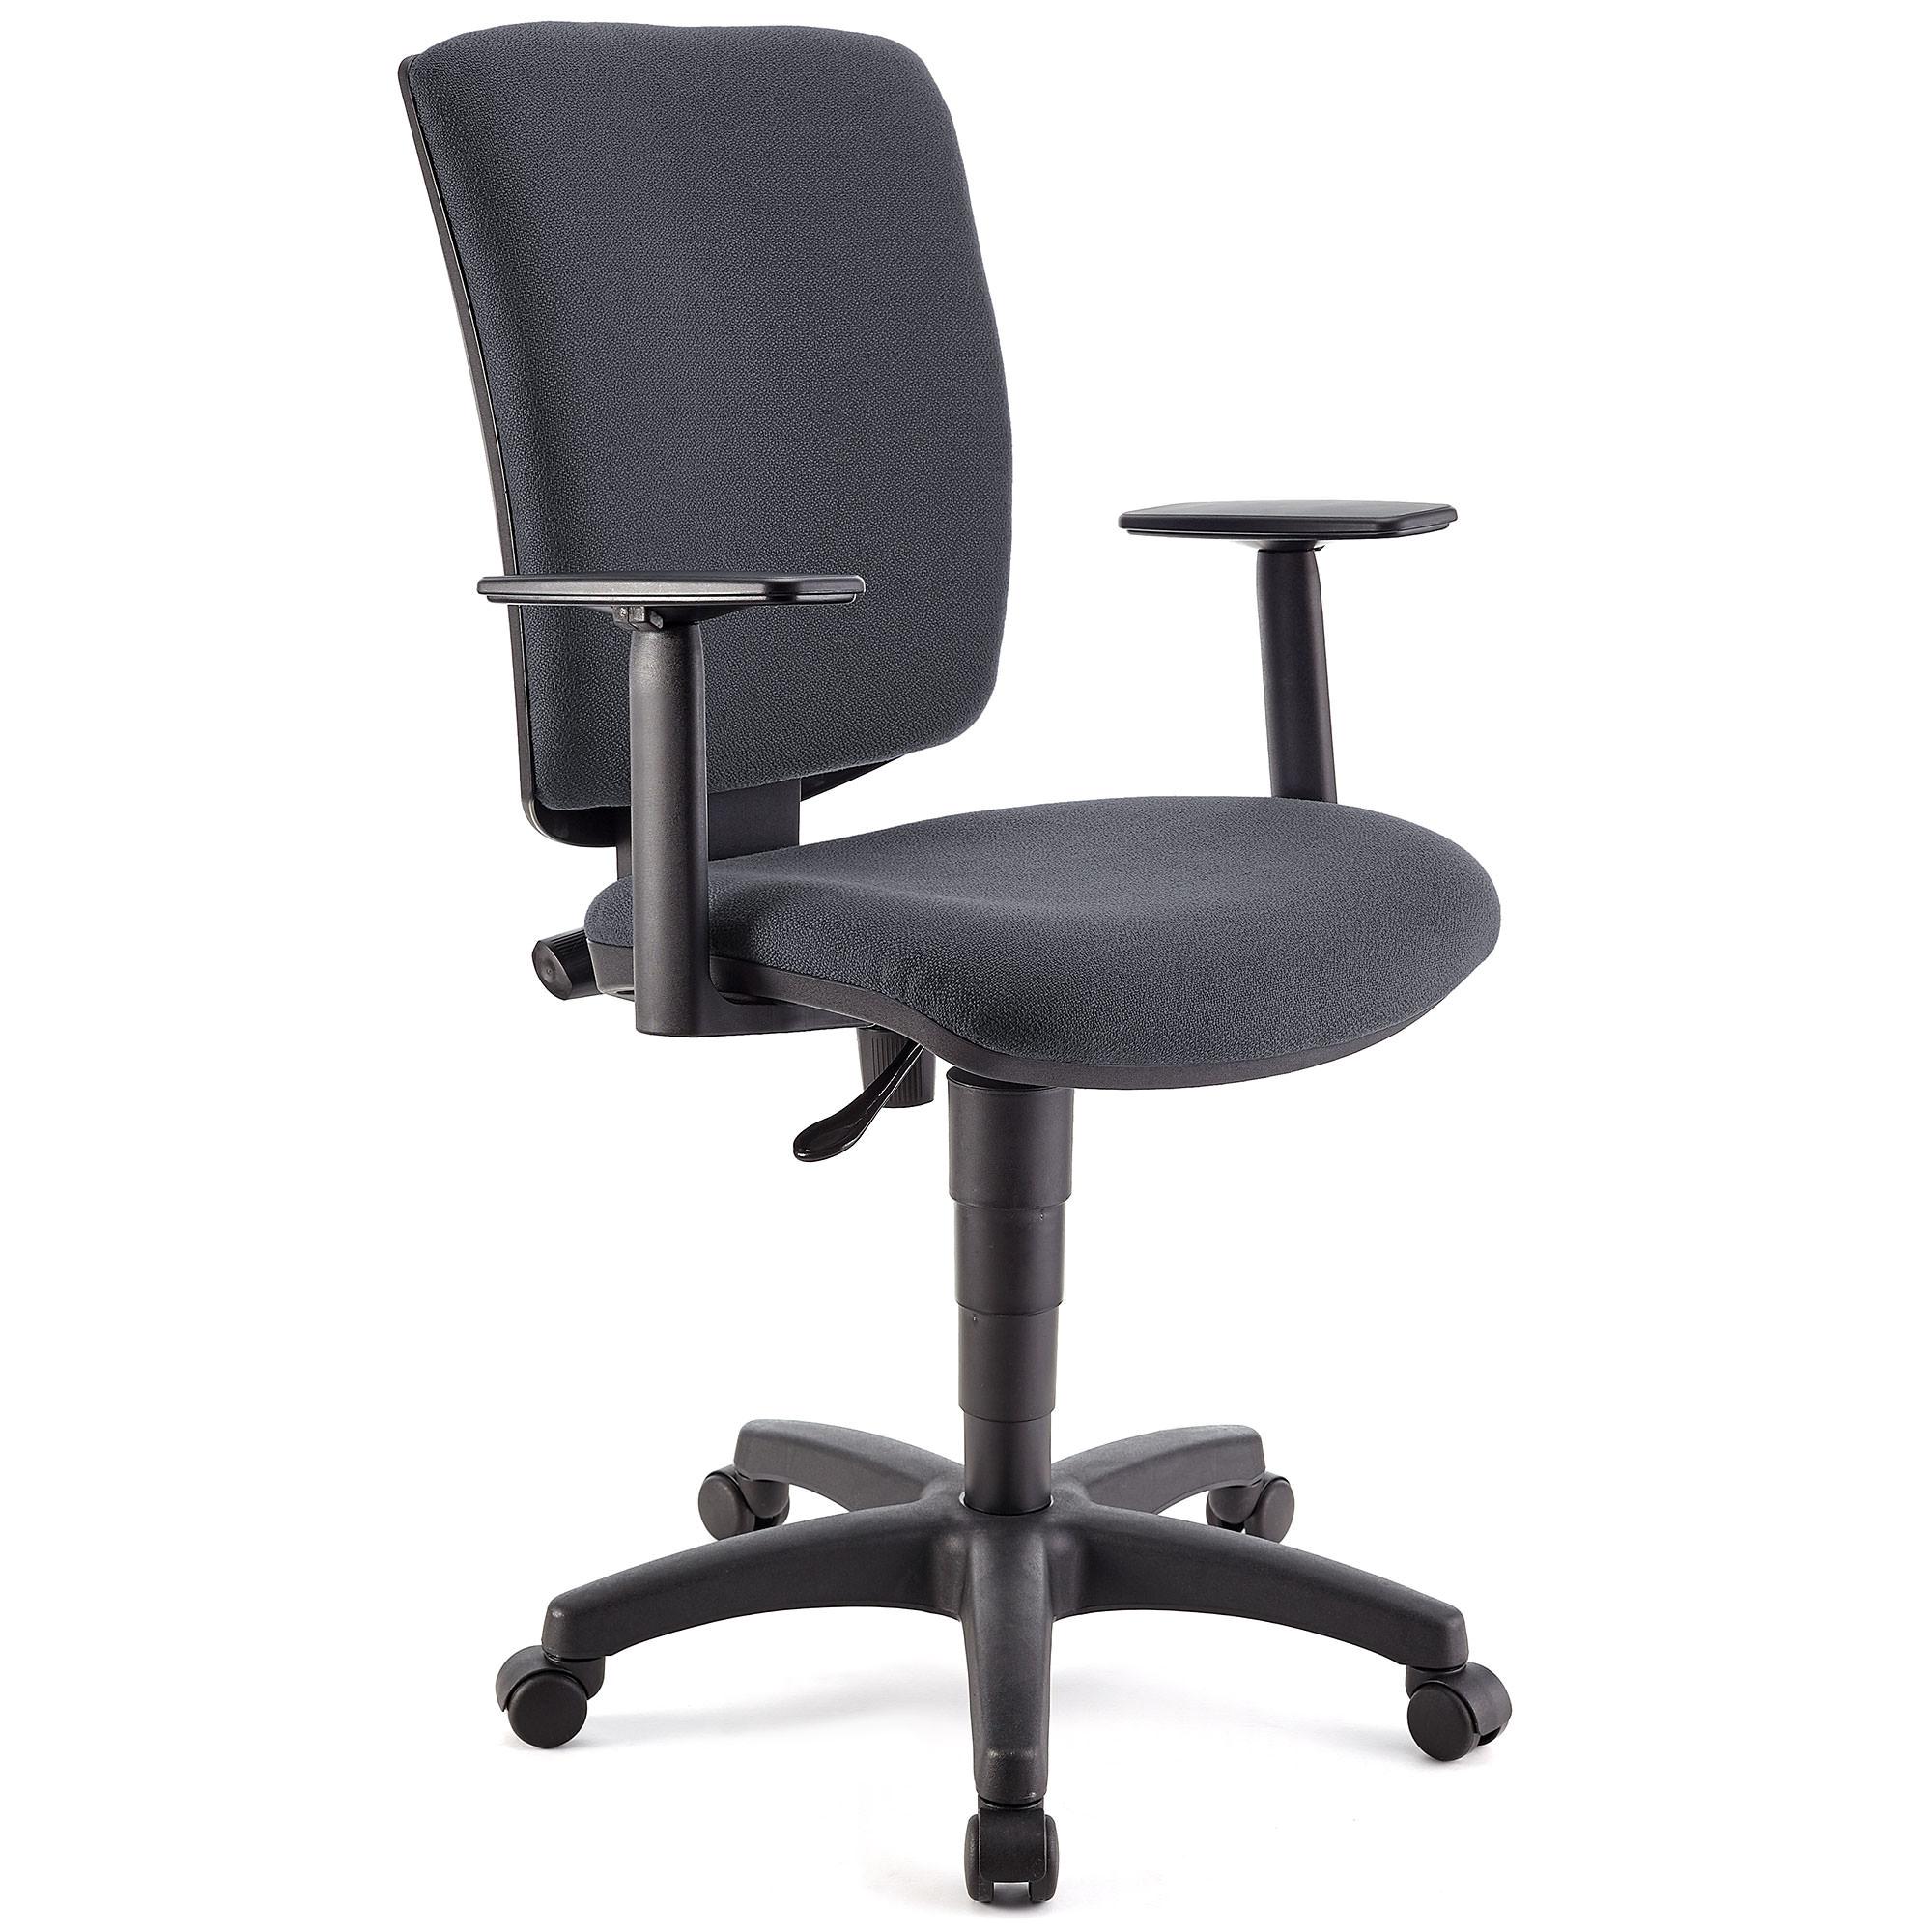 Bürostuhl ATLAS PLUS STOFF, verstellbare Rücken- und Armlehnen, dicke Polsterung, Farbe Grau